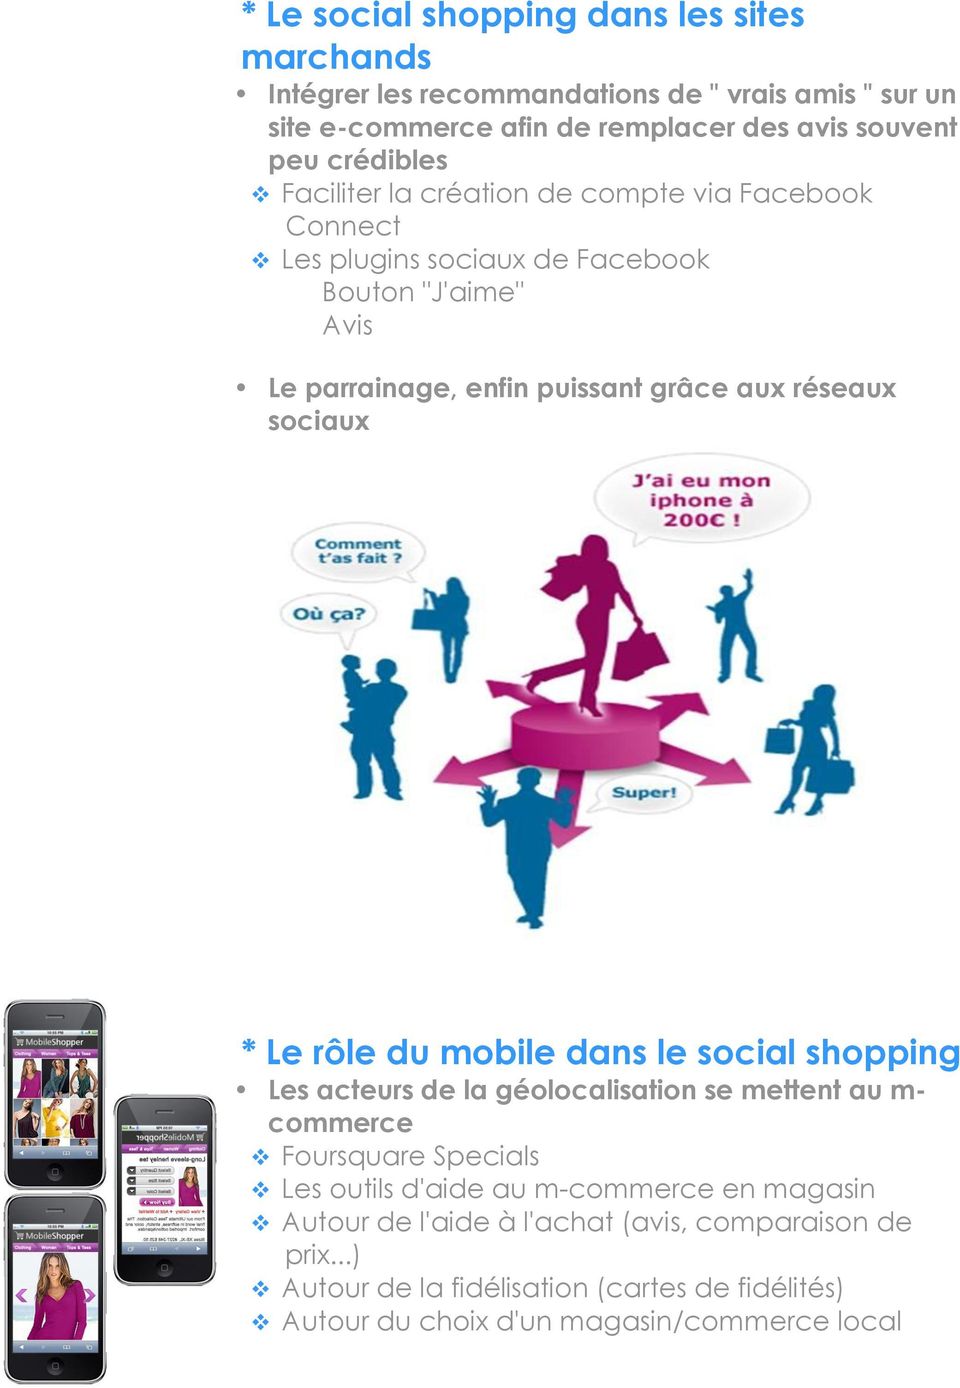 réseaux sociaux * Le rôle du mobile dans le social shopping Les acteurs de la géolocalisation se mettent au m- commerce Foursquare Specials Les outils d'aide au